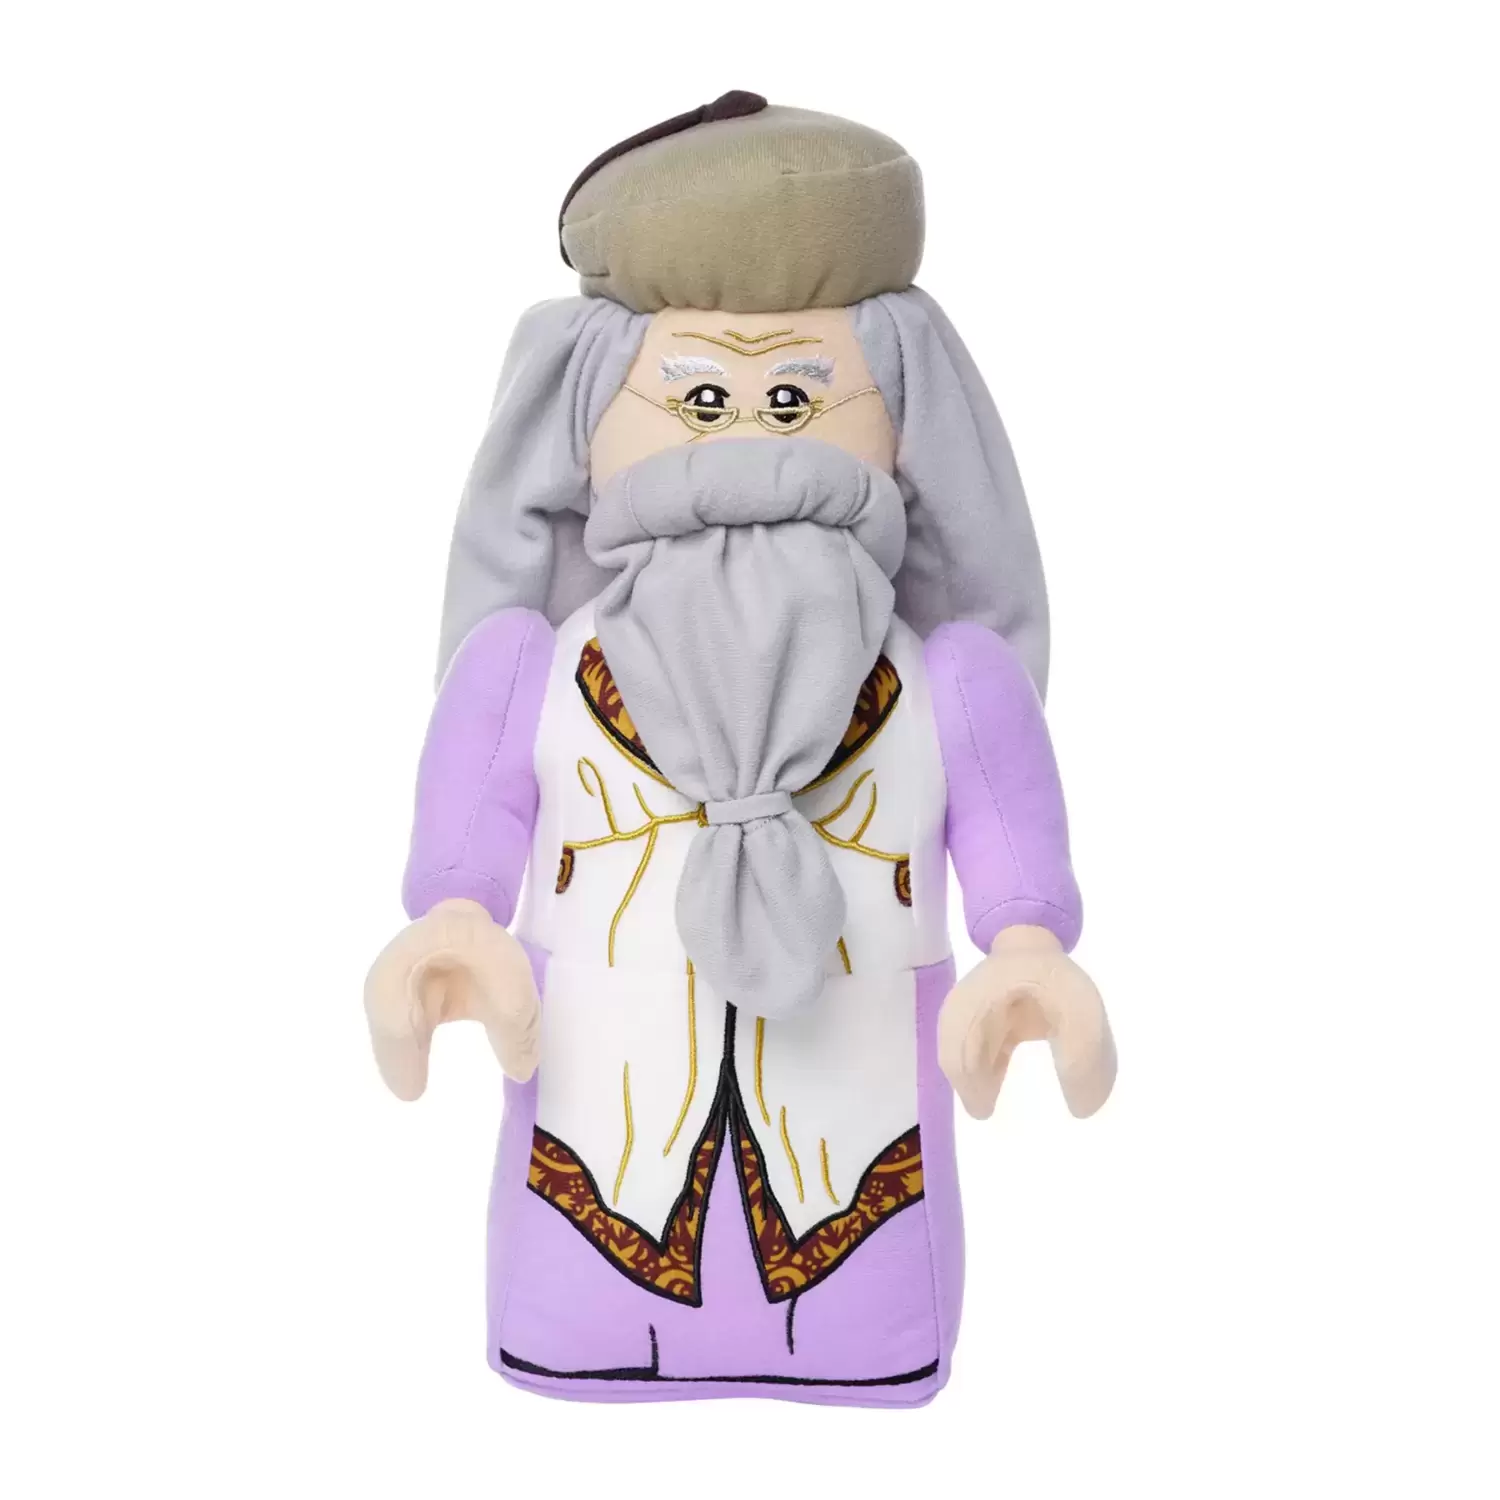 Lego Plush - Albus Dumbledore LEGO Plush